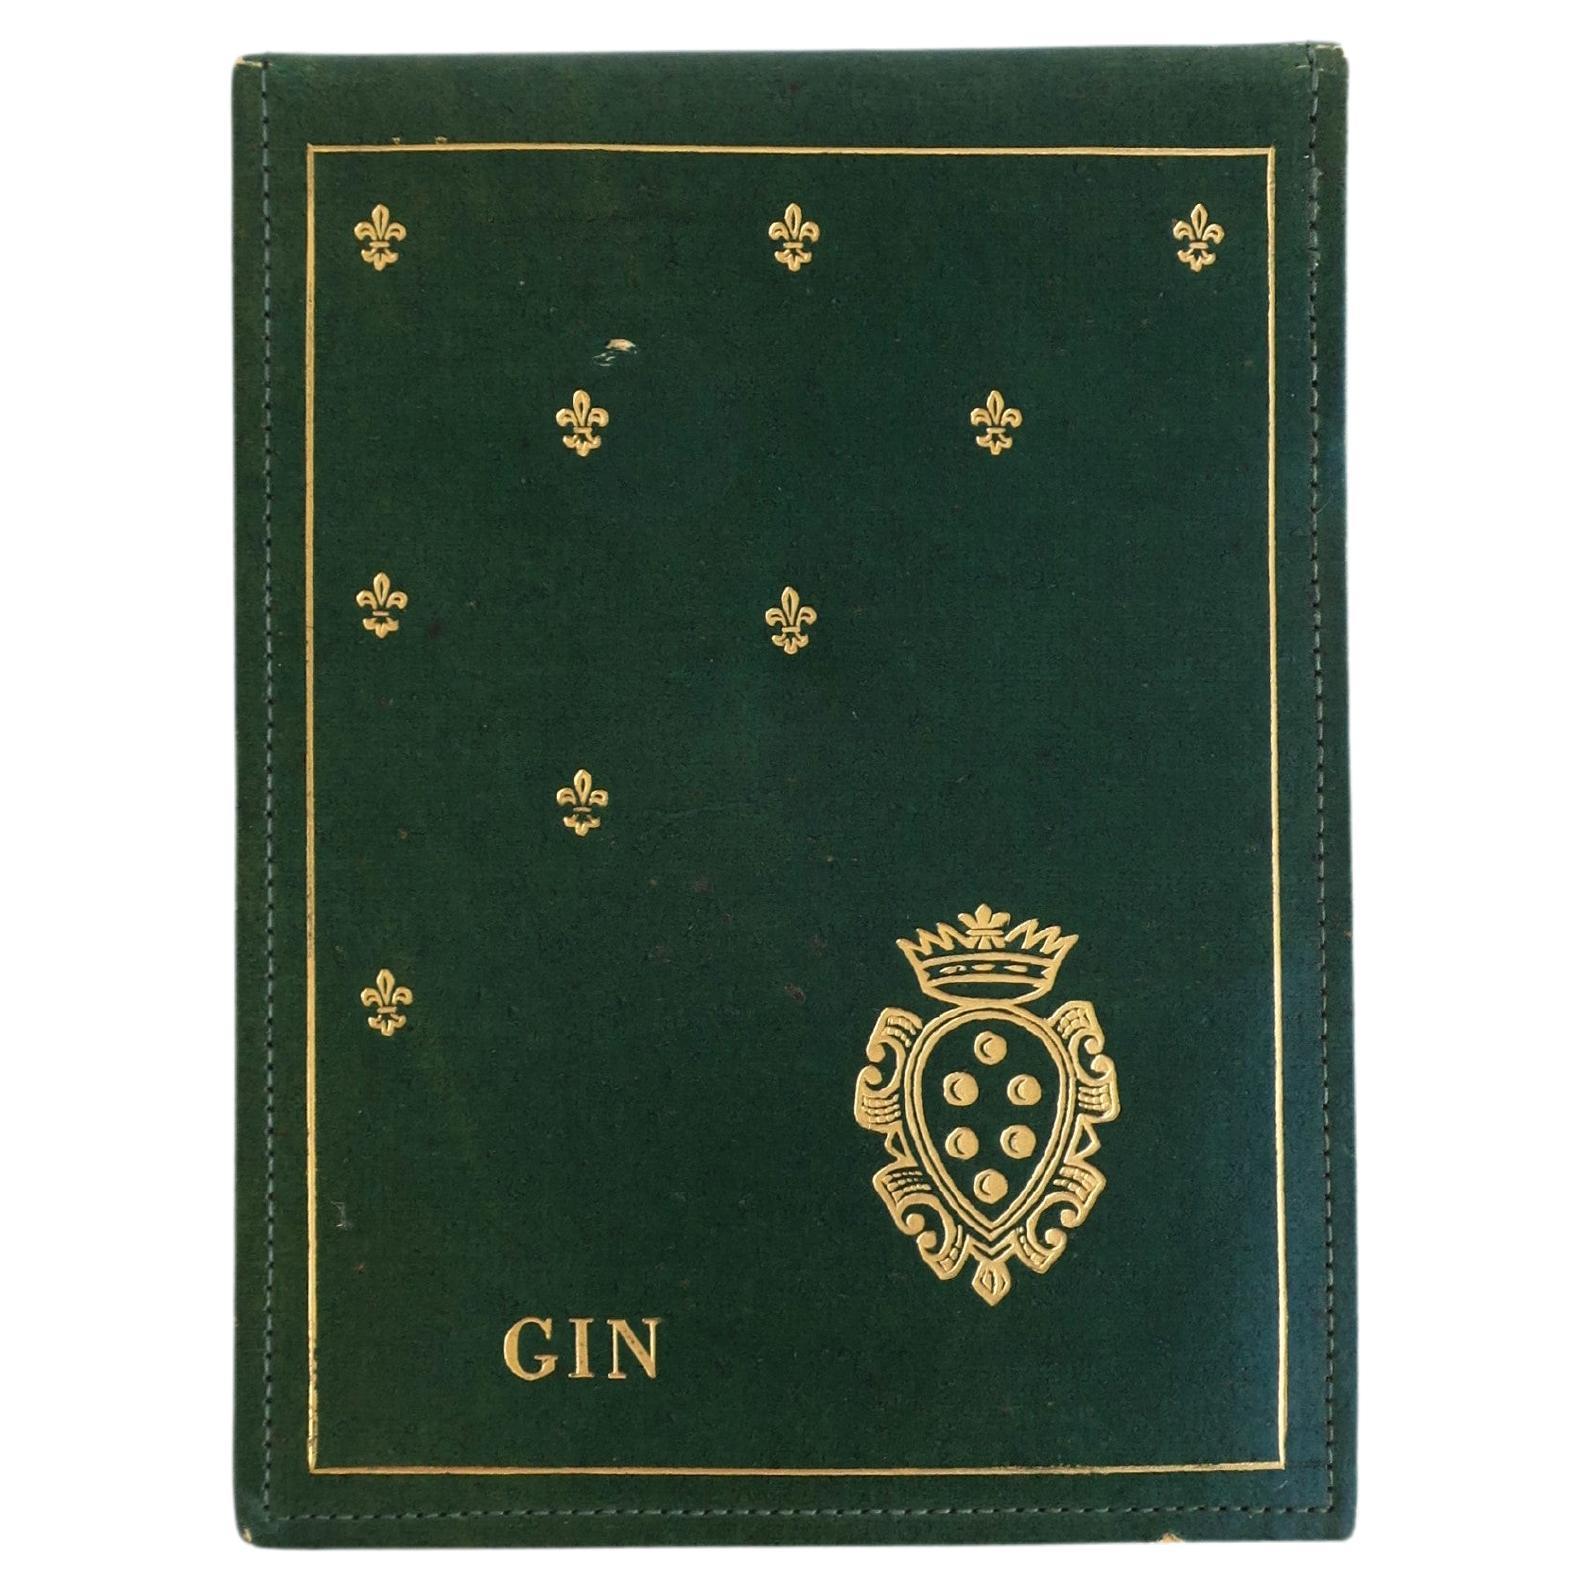 Gin-Kartenspiel Scoring Pad Hergestellt in Italien